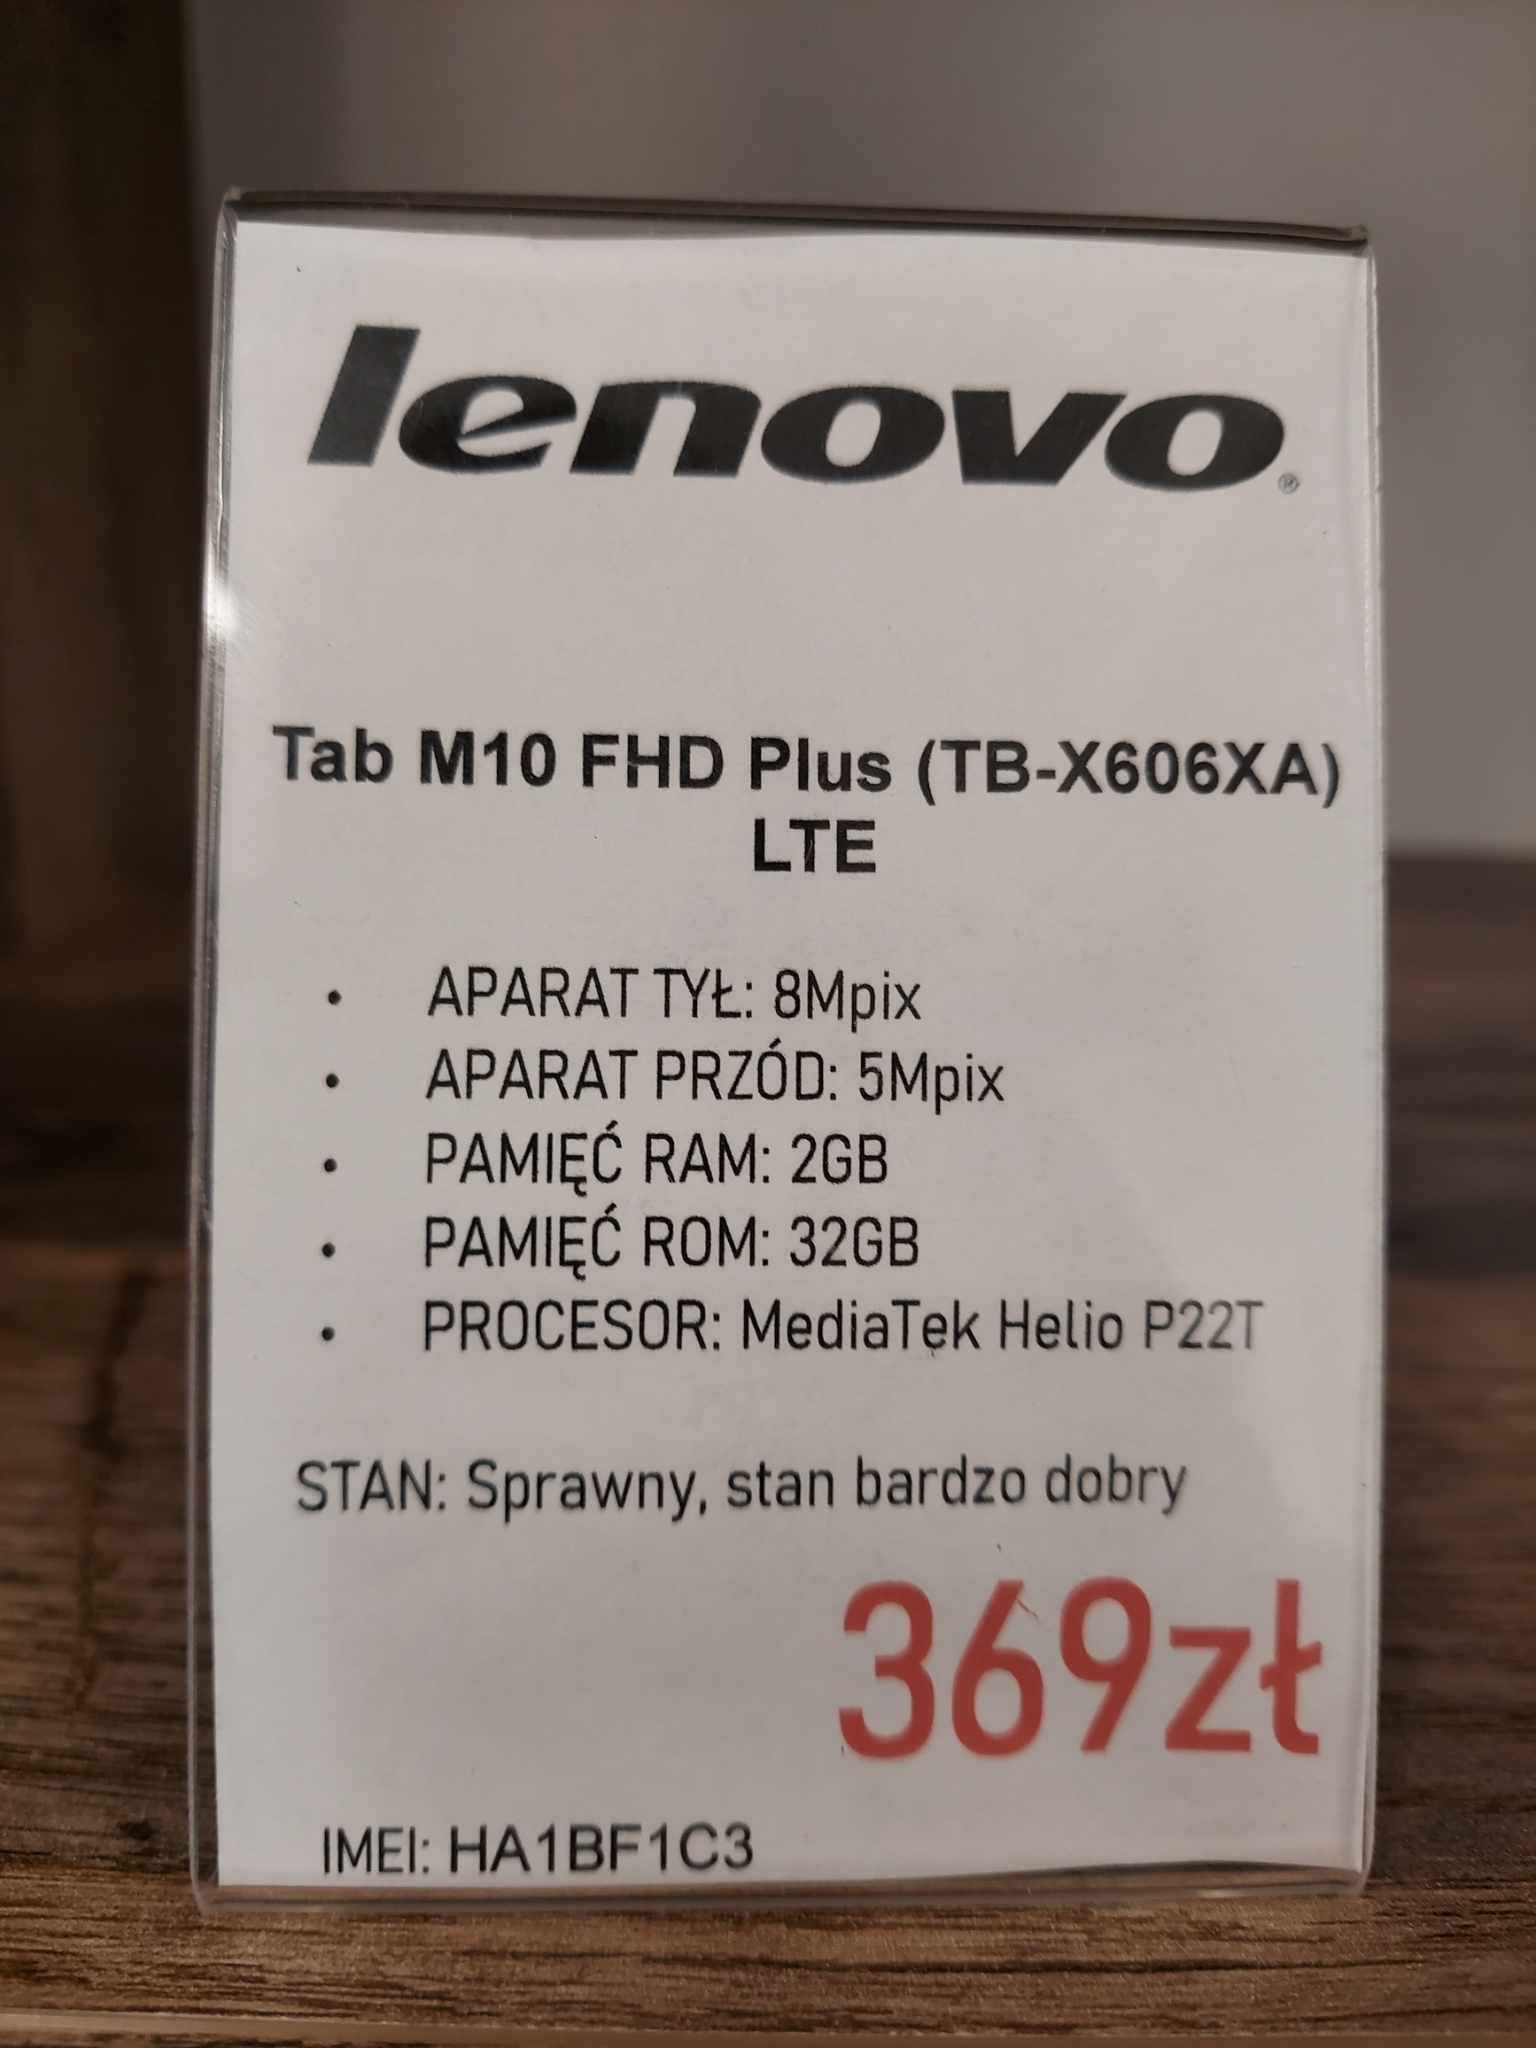 Tablet Lenovo Tab M10 FHD Plus (TB-X606XA) LTE 2/32GB gwarancja